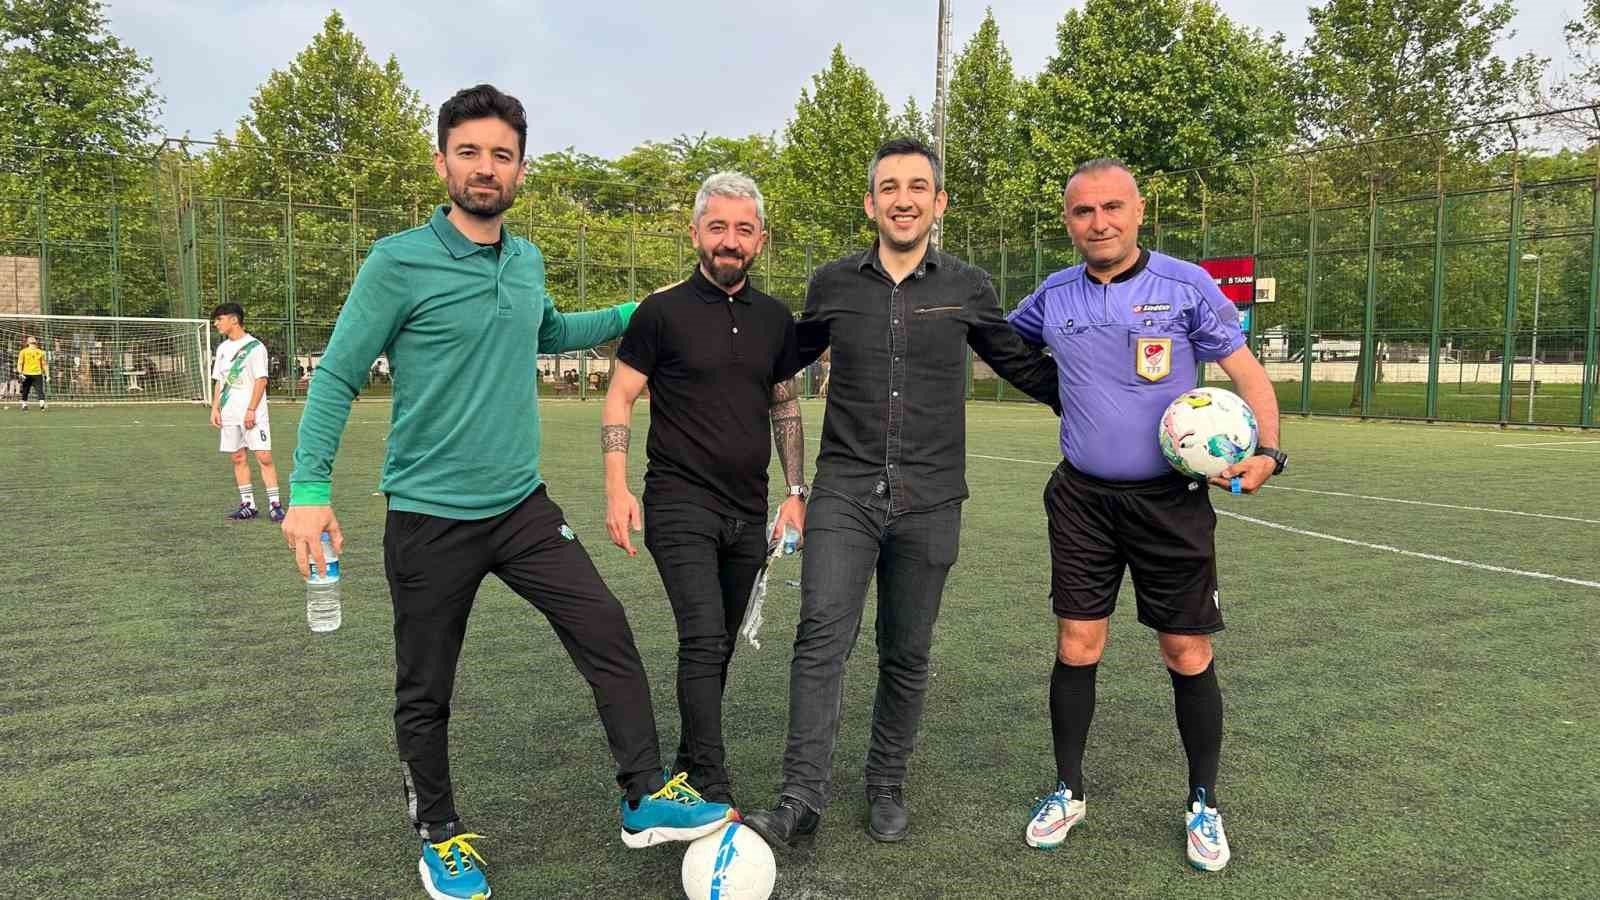 Bursa’da turnuva dünyaca ünlü yıldızın imzalı topuyla başladı